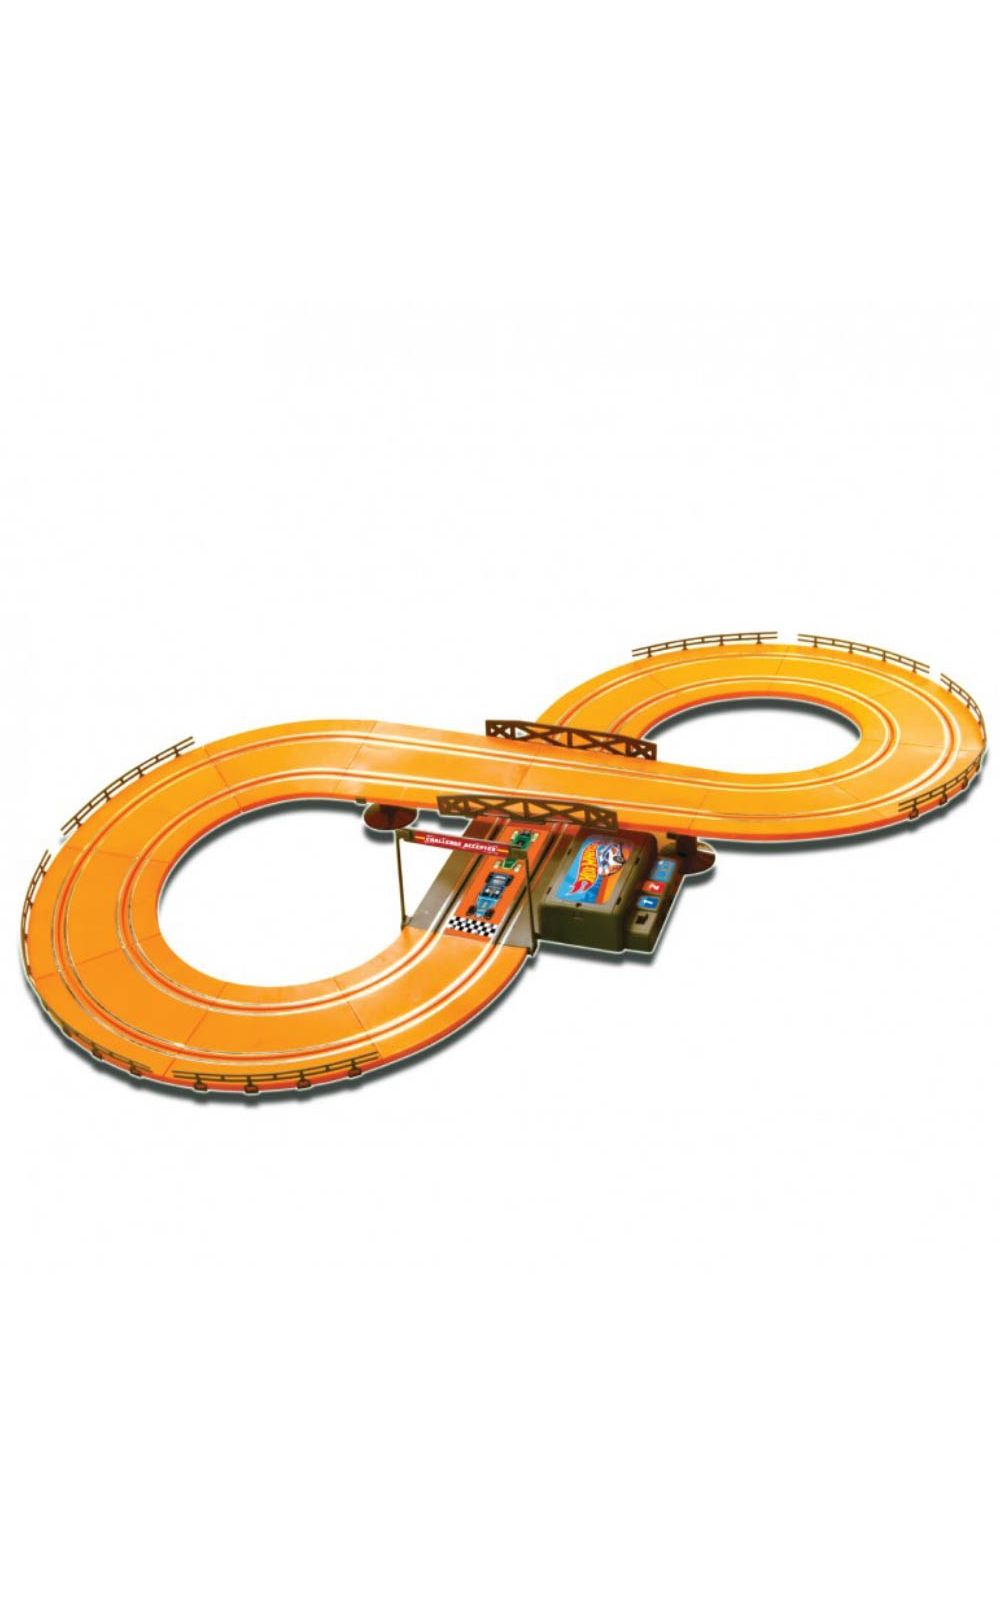 Foto 2 - Hot Wheels Track Set (286cm) Basic Multikids - BR081